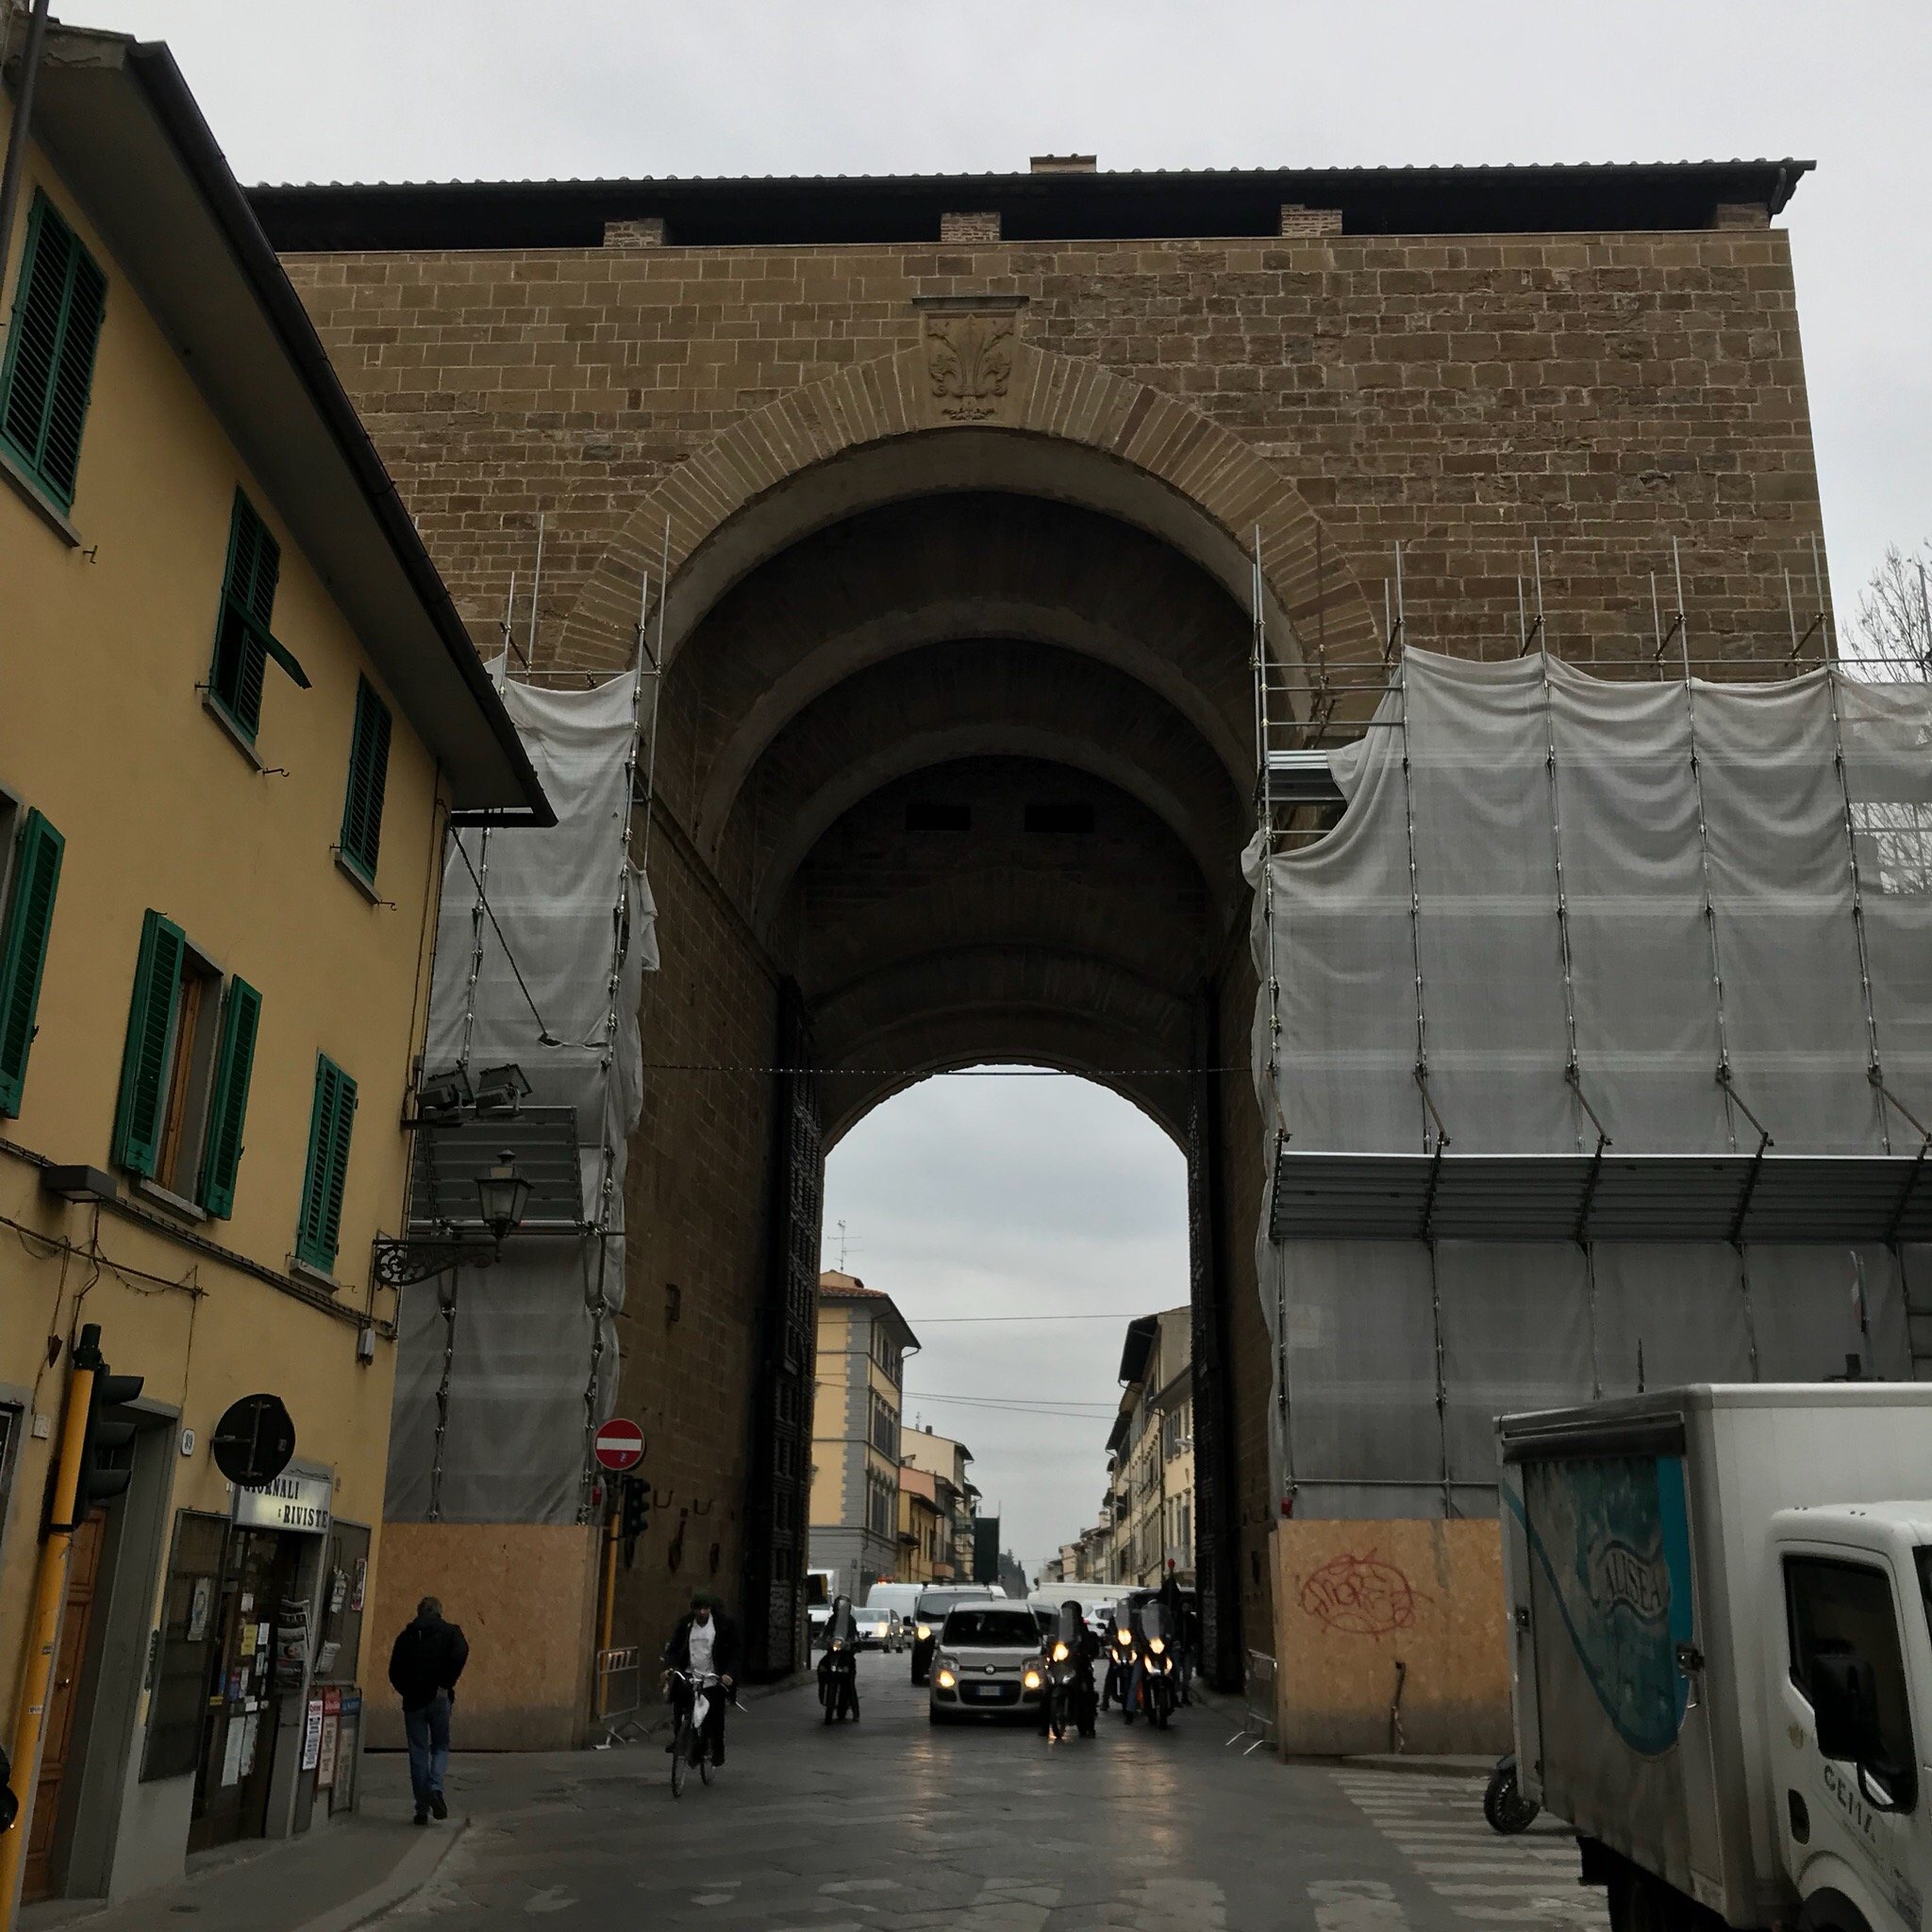 Porta di San Frediano